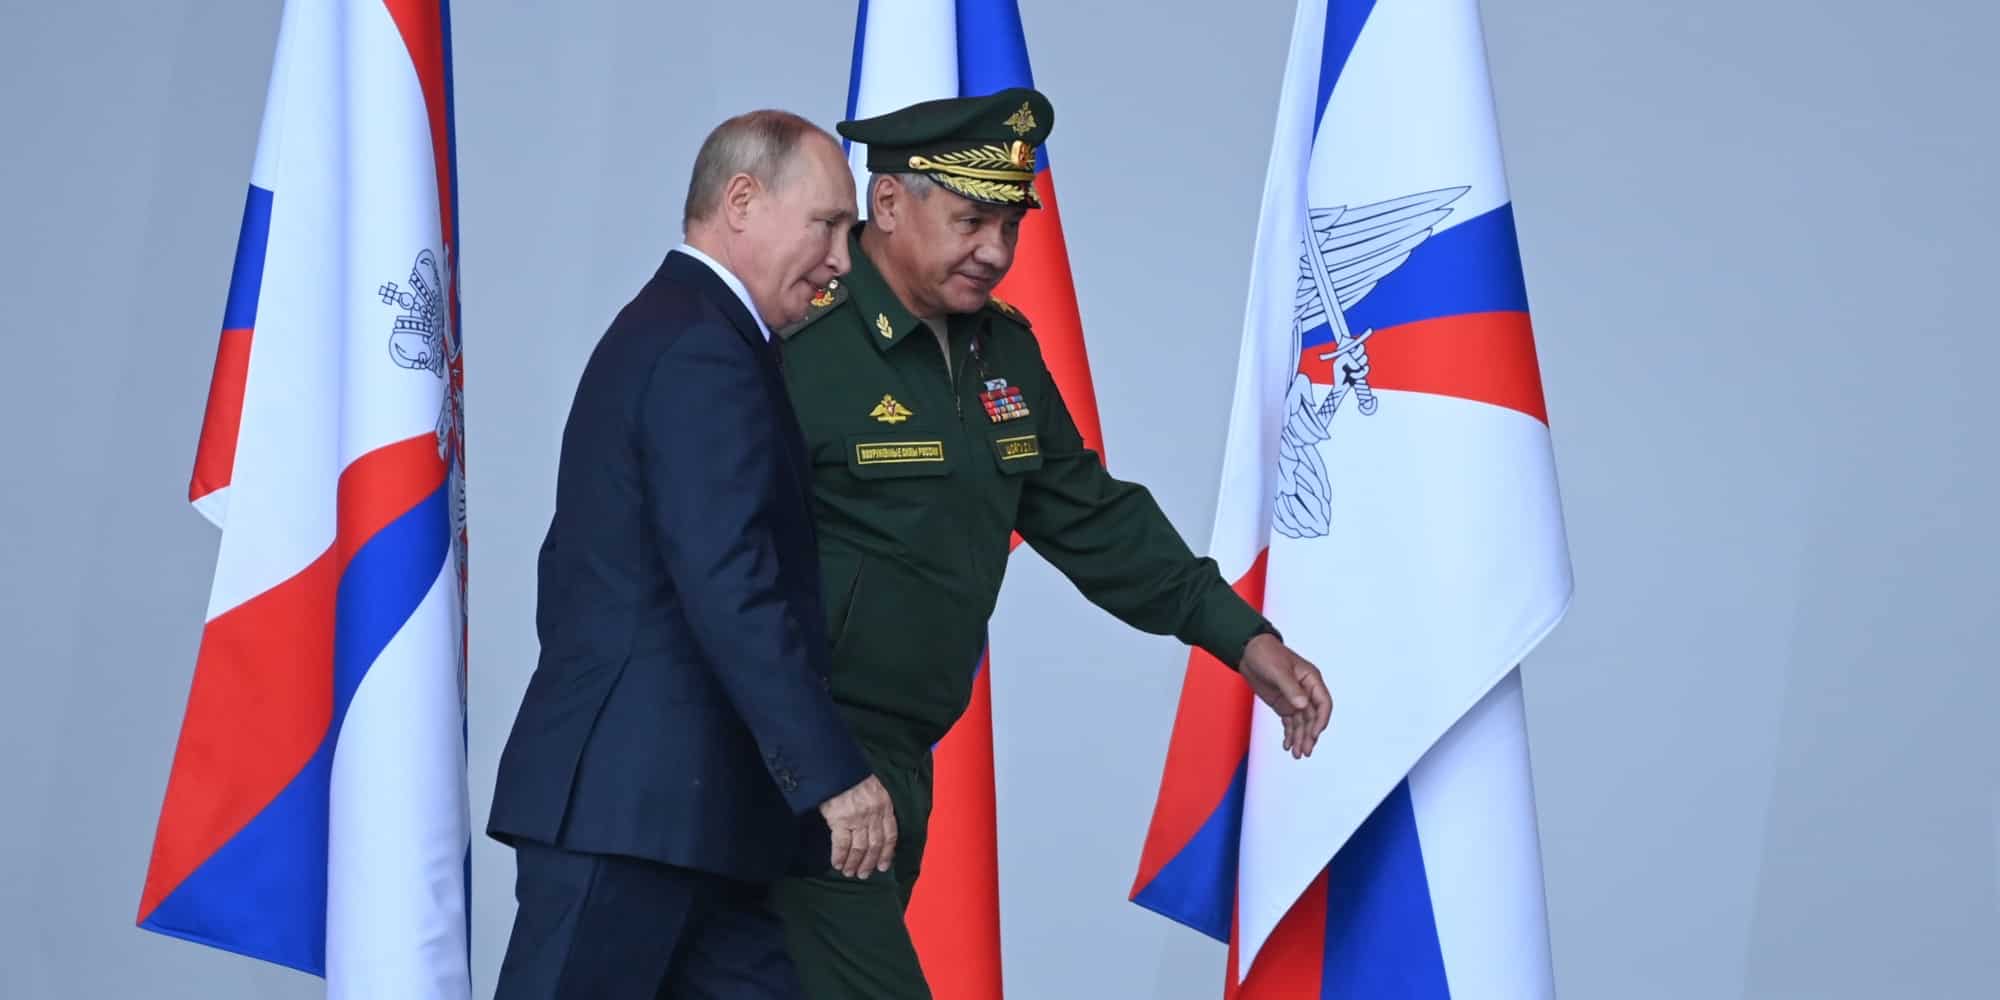 Ο Ρώσος πρόεδρος Βλαντιμίρ Πούτιν και ο υπουργός Άμυνας της Ρωσίας, Σεργκέι Σοϊγκού